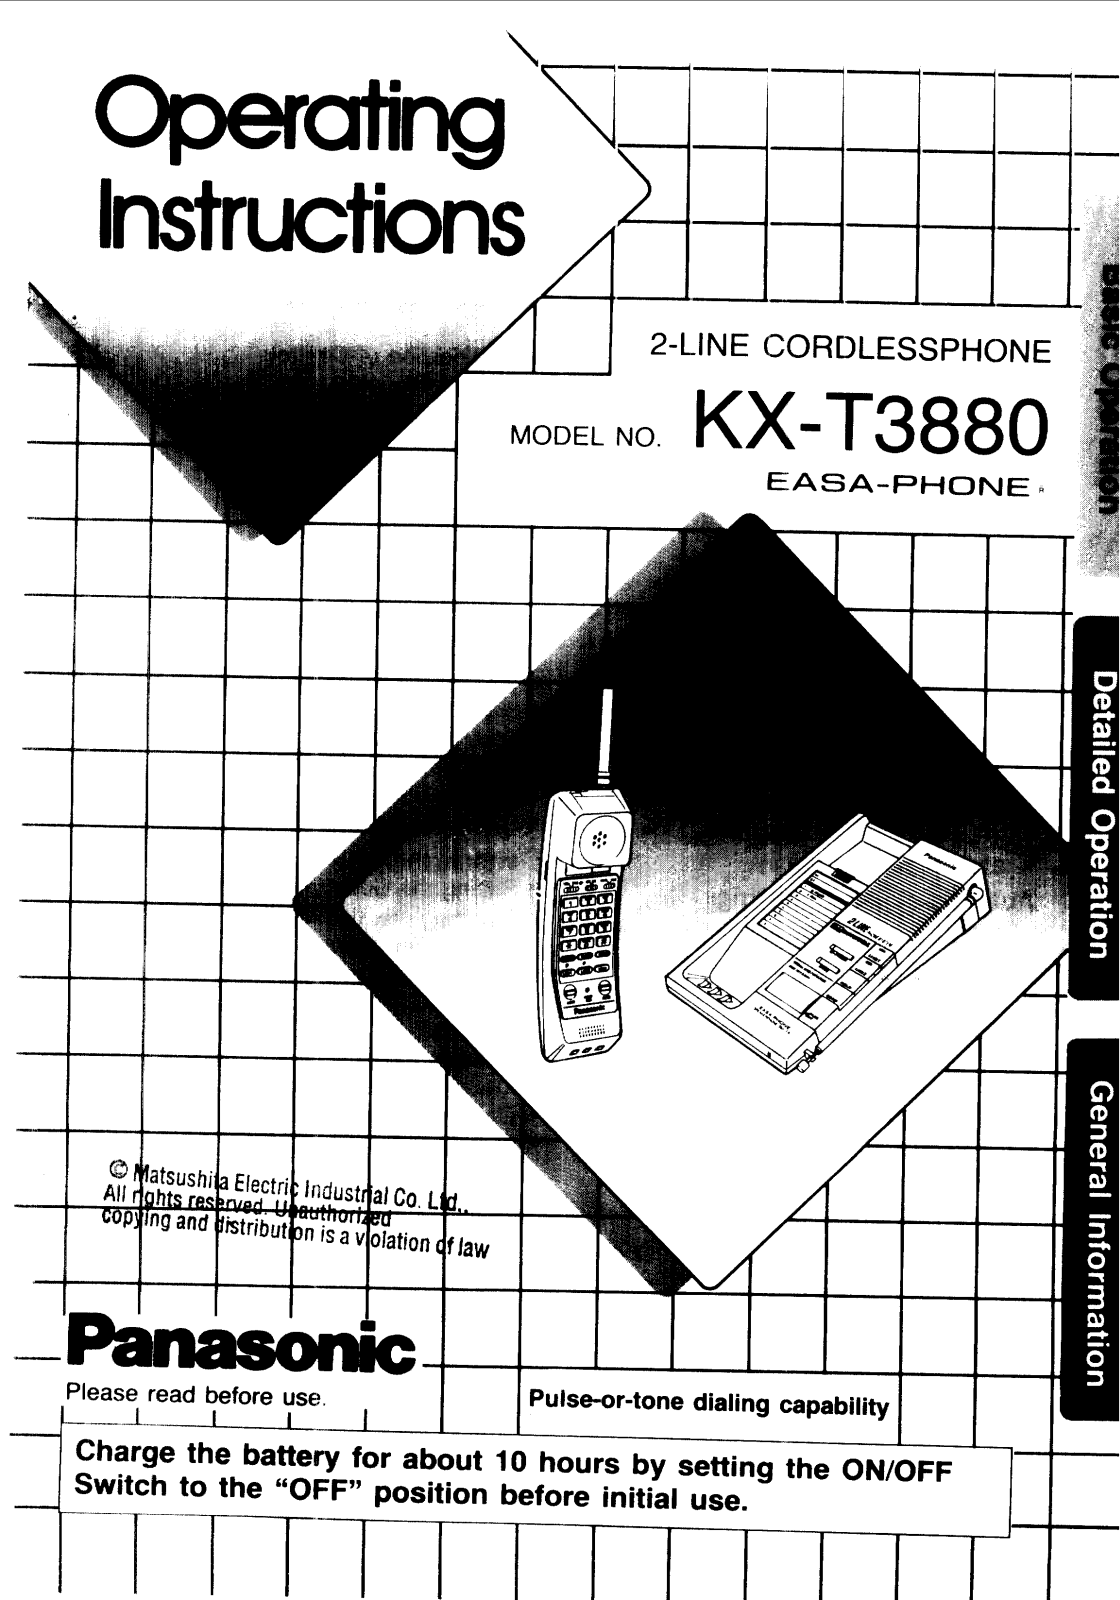 Panasonic kx-t3880 Operation Manual